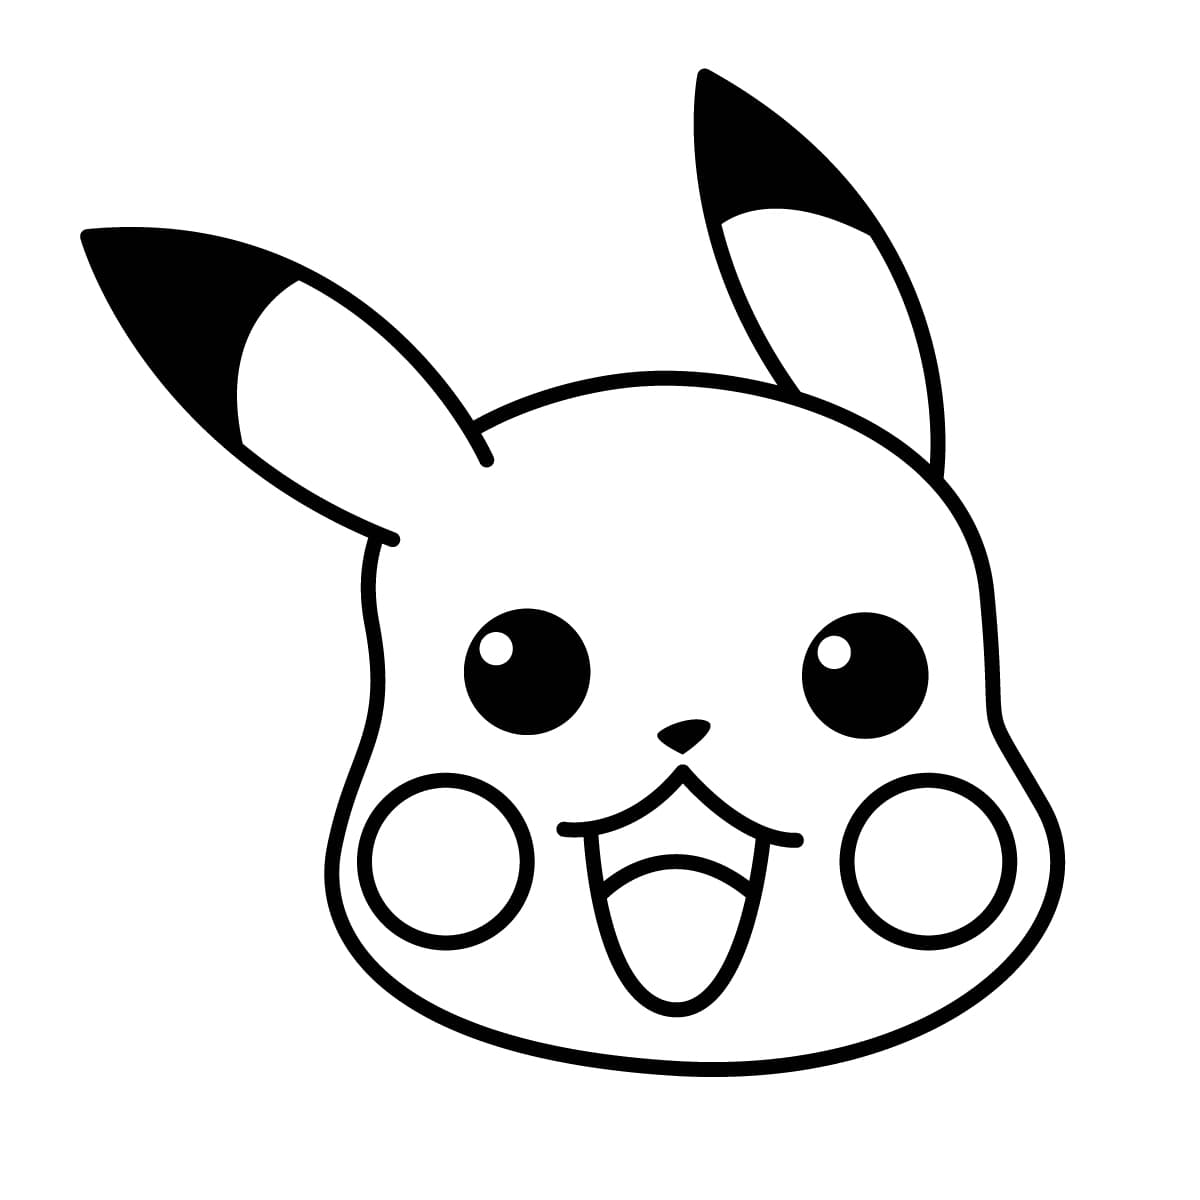 Dibujo de pikachu para colorear e imprimir - Dibujos y colores